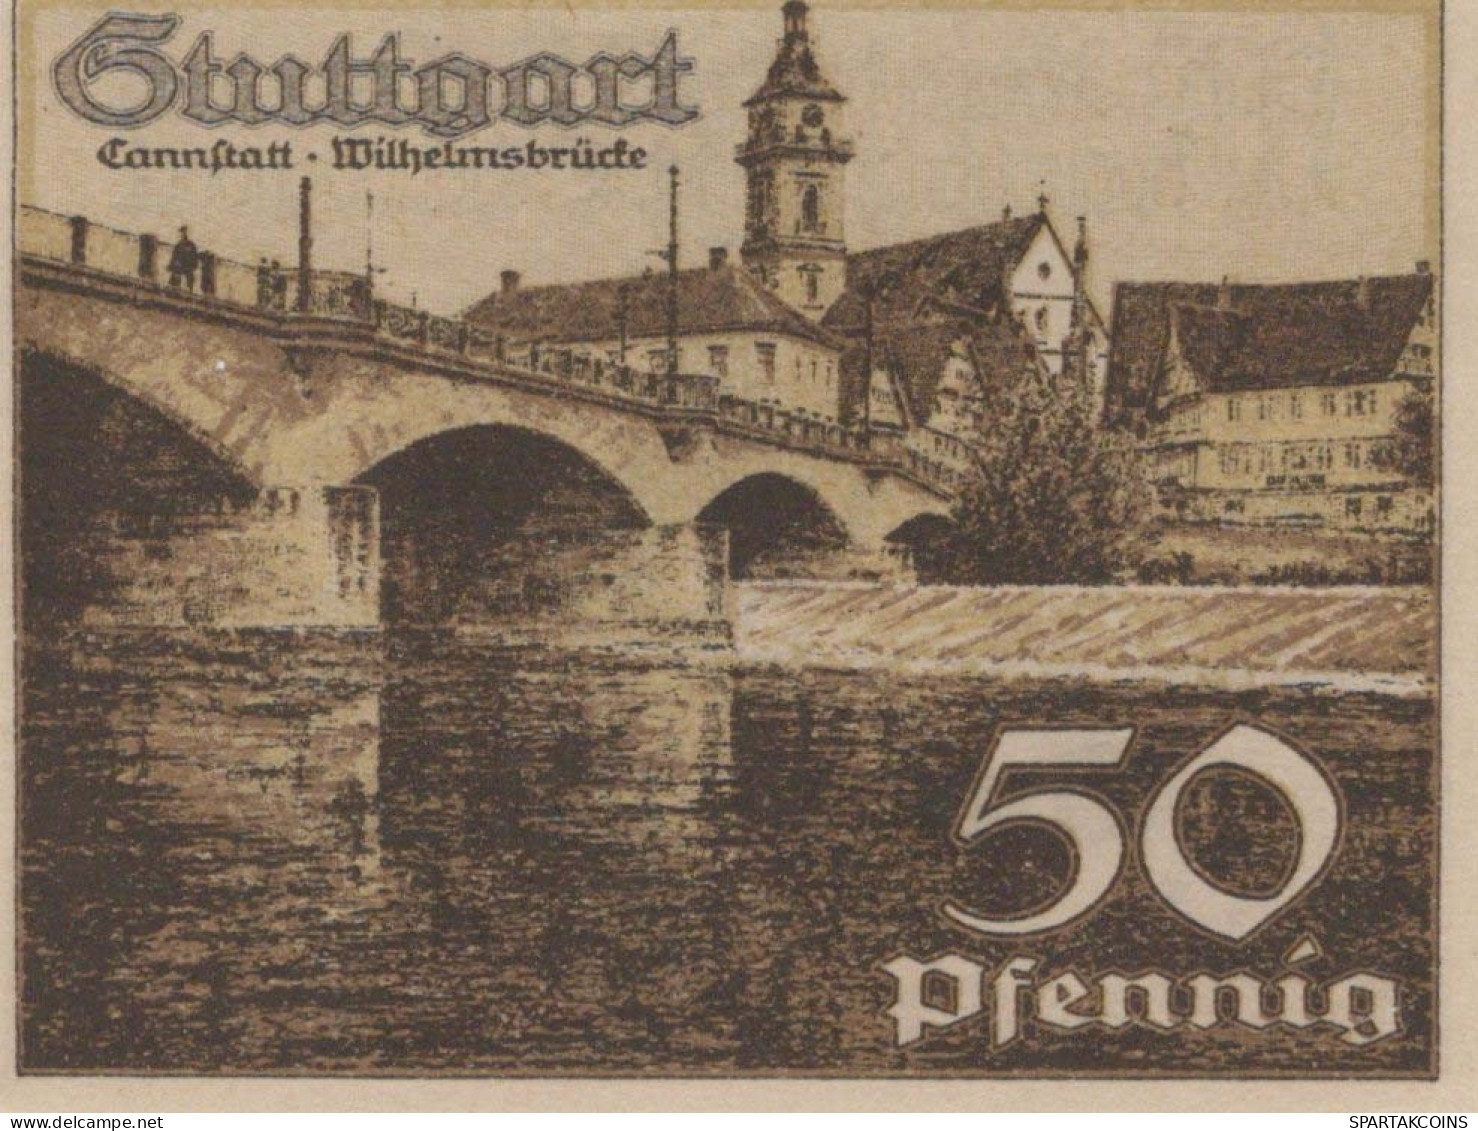 50 PFENNIG 1921 Stadt STUTTGART Württemberg UNC DEUTSCHLAND Notgeld #PC439 - [11] Emissions Locales